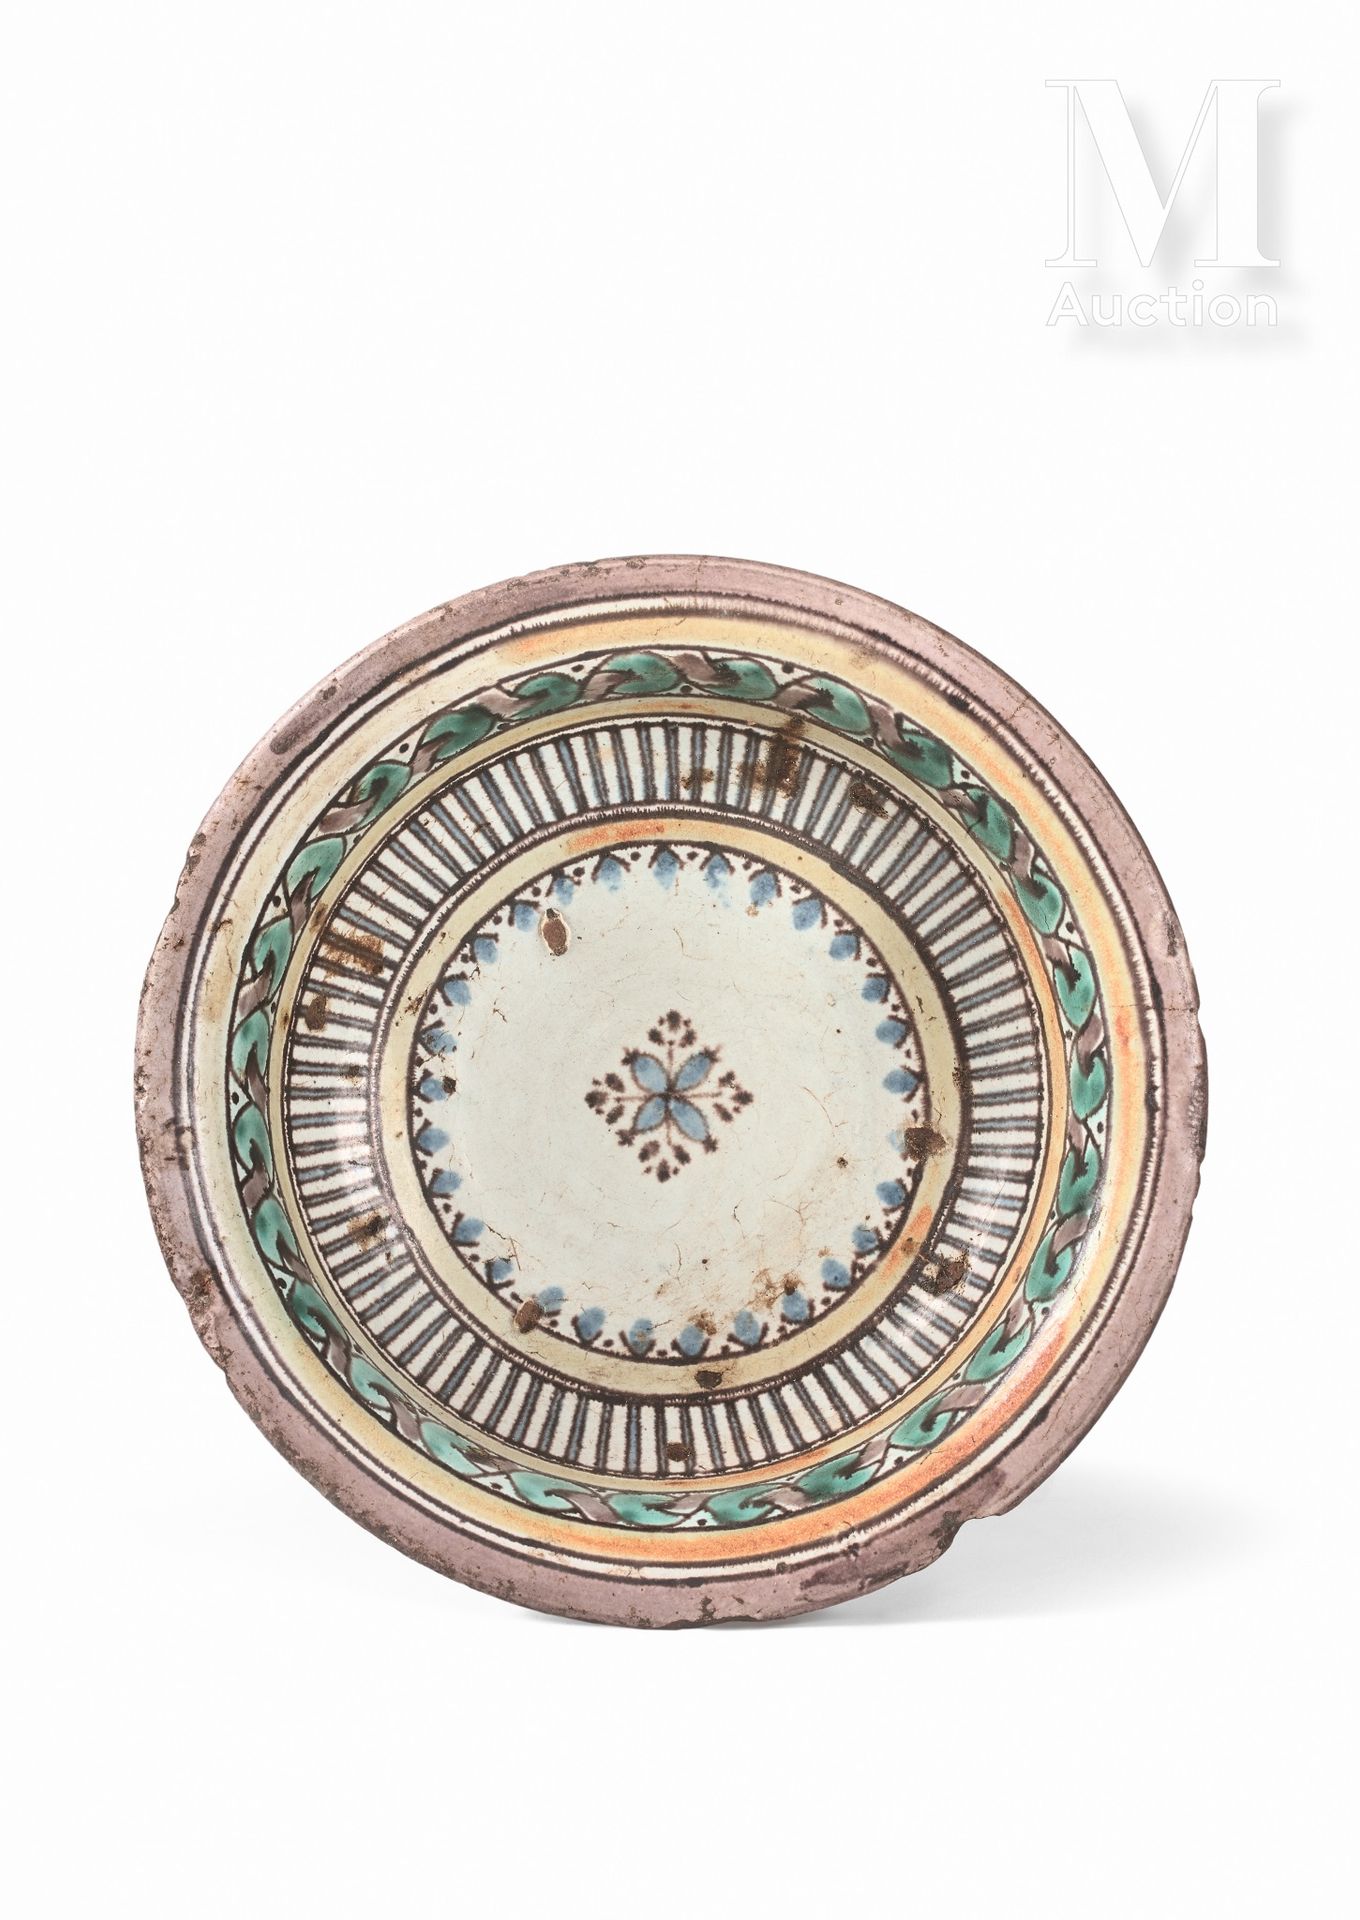 Tobsil de Fès Marocco, XVIII secolo

Piatto in ceramica su piedistallo decorato &hellip;